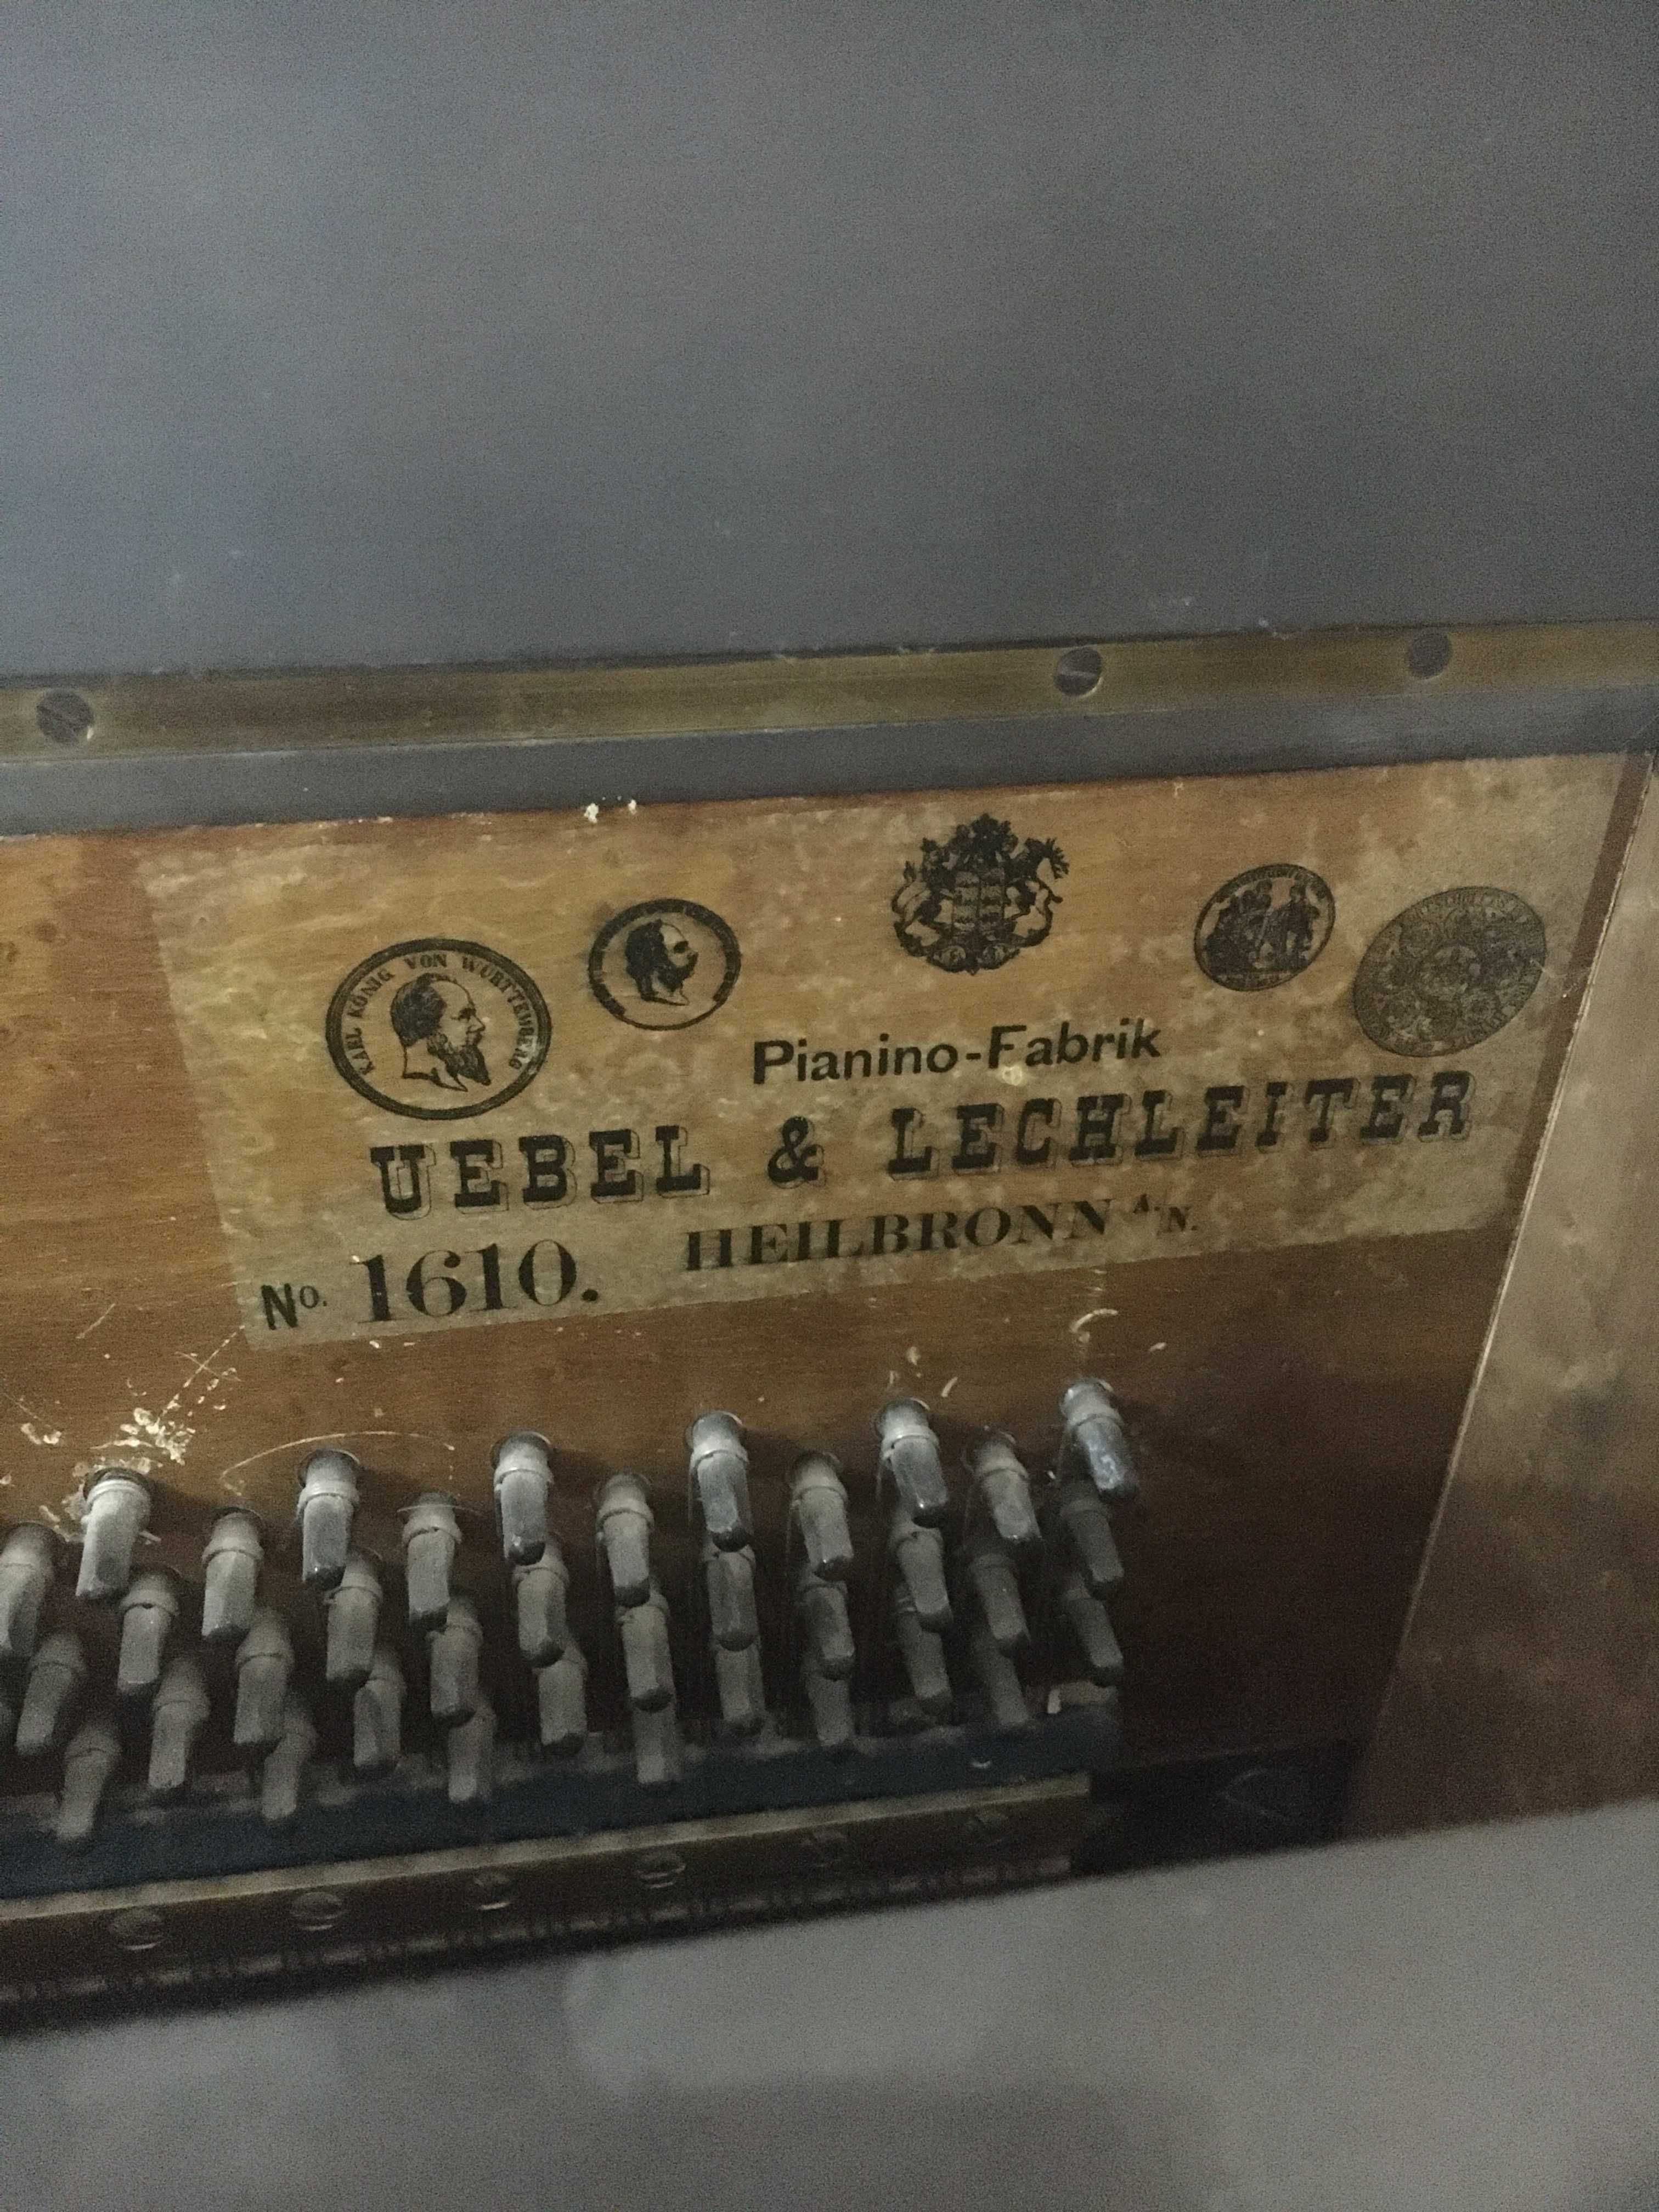 Продаётся старинное немецкое пианино. 
Пианино около 100 лет.